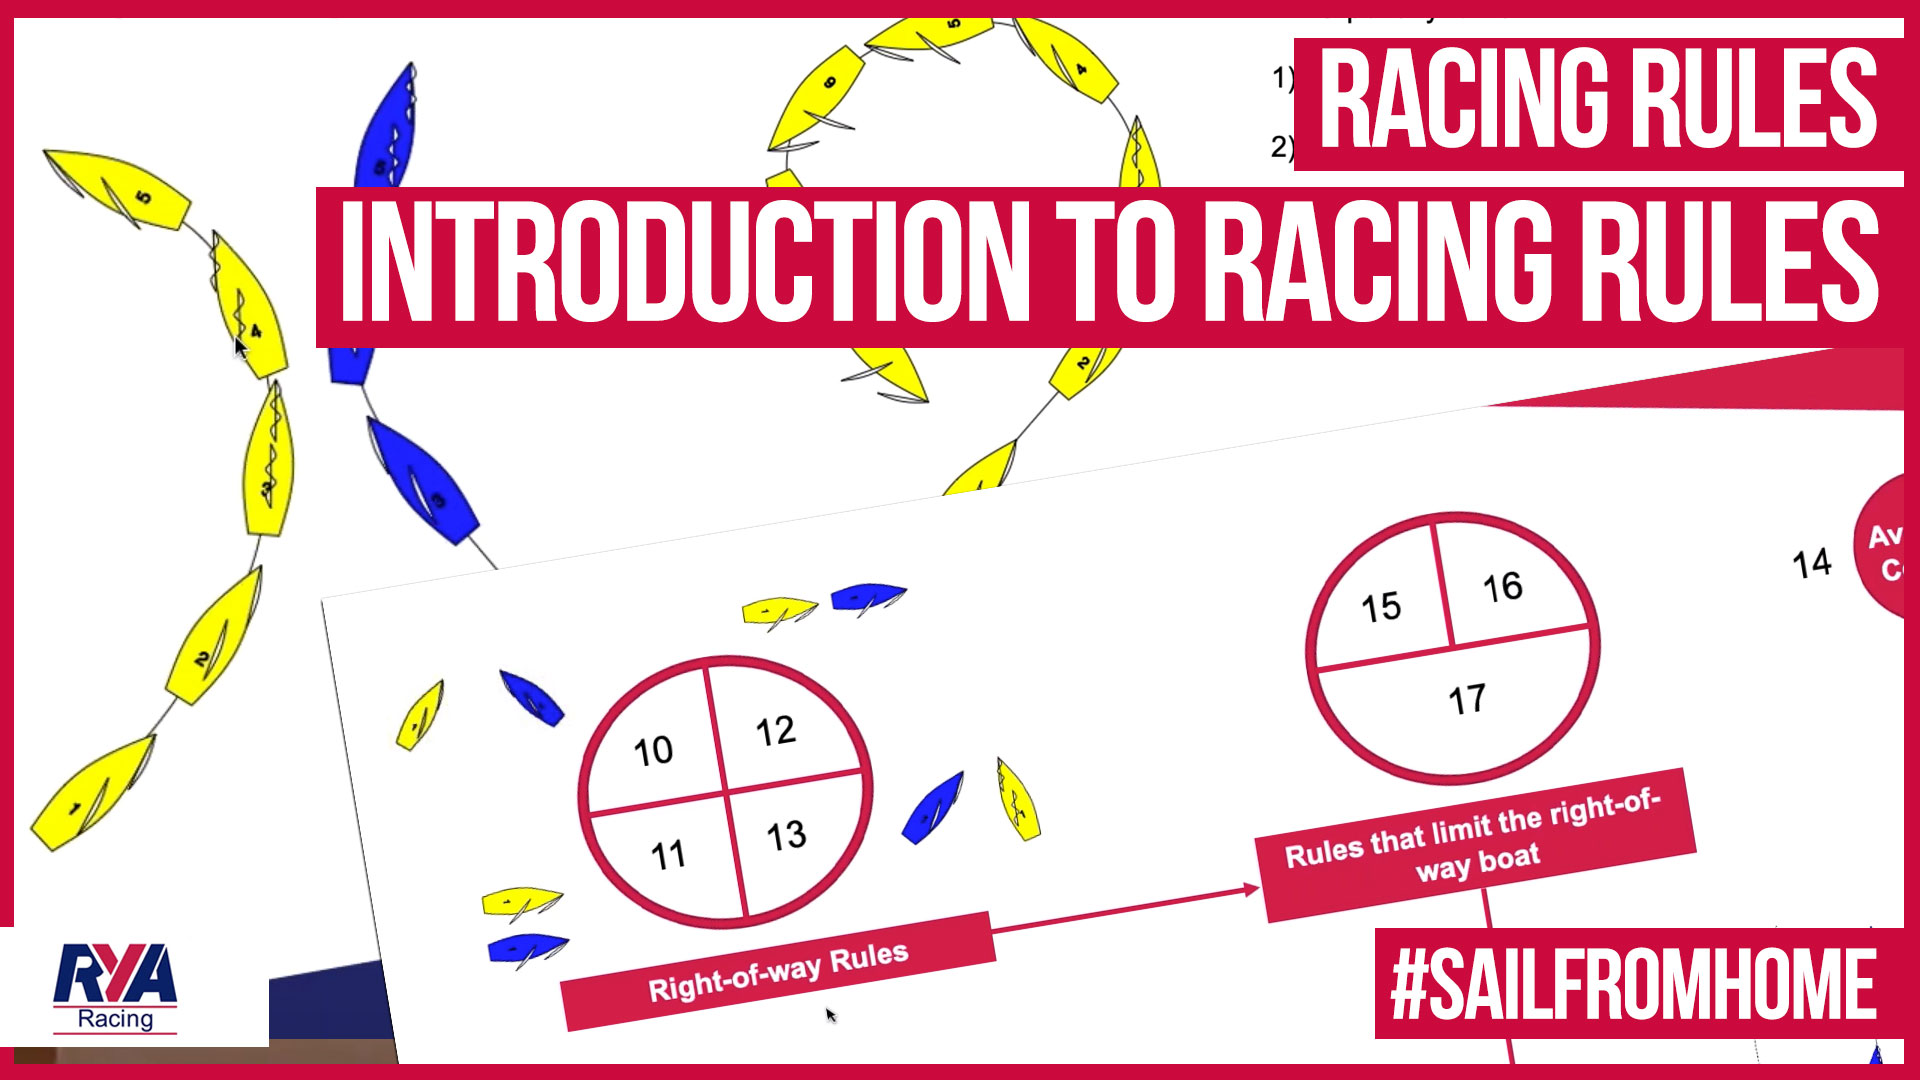 Diagramatic representation of racing rules scenarios